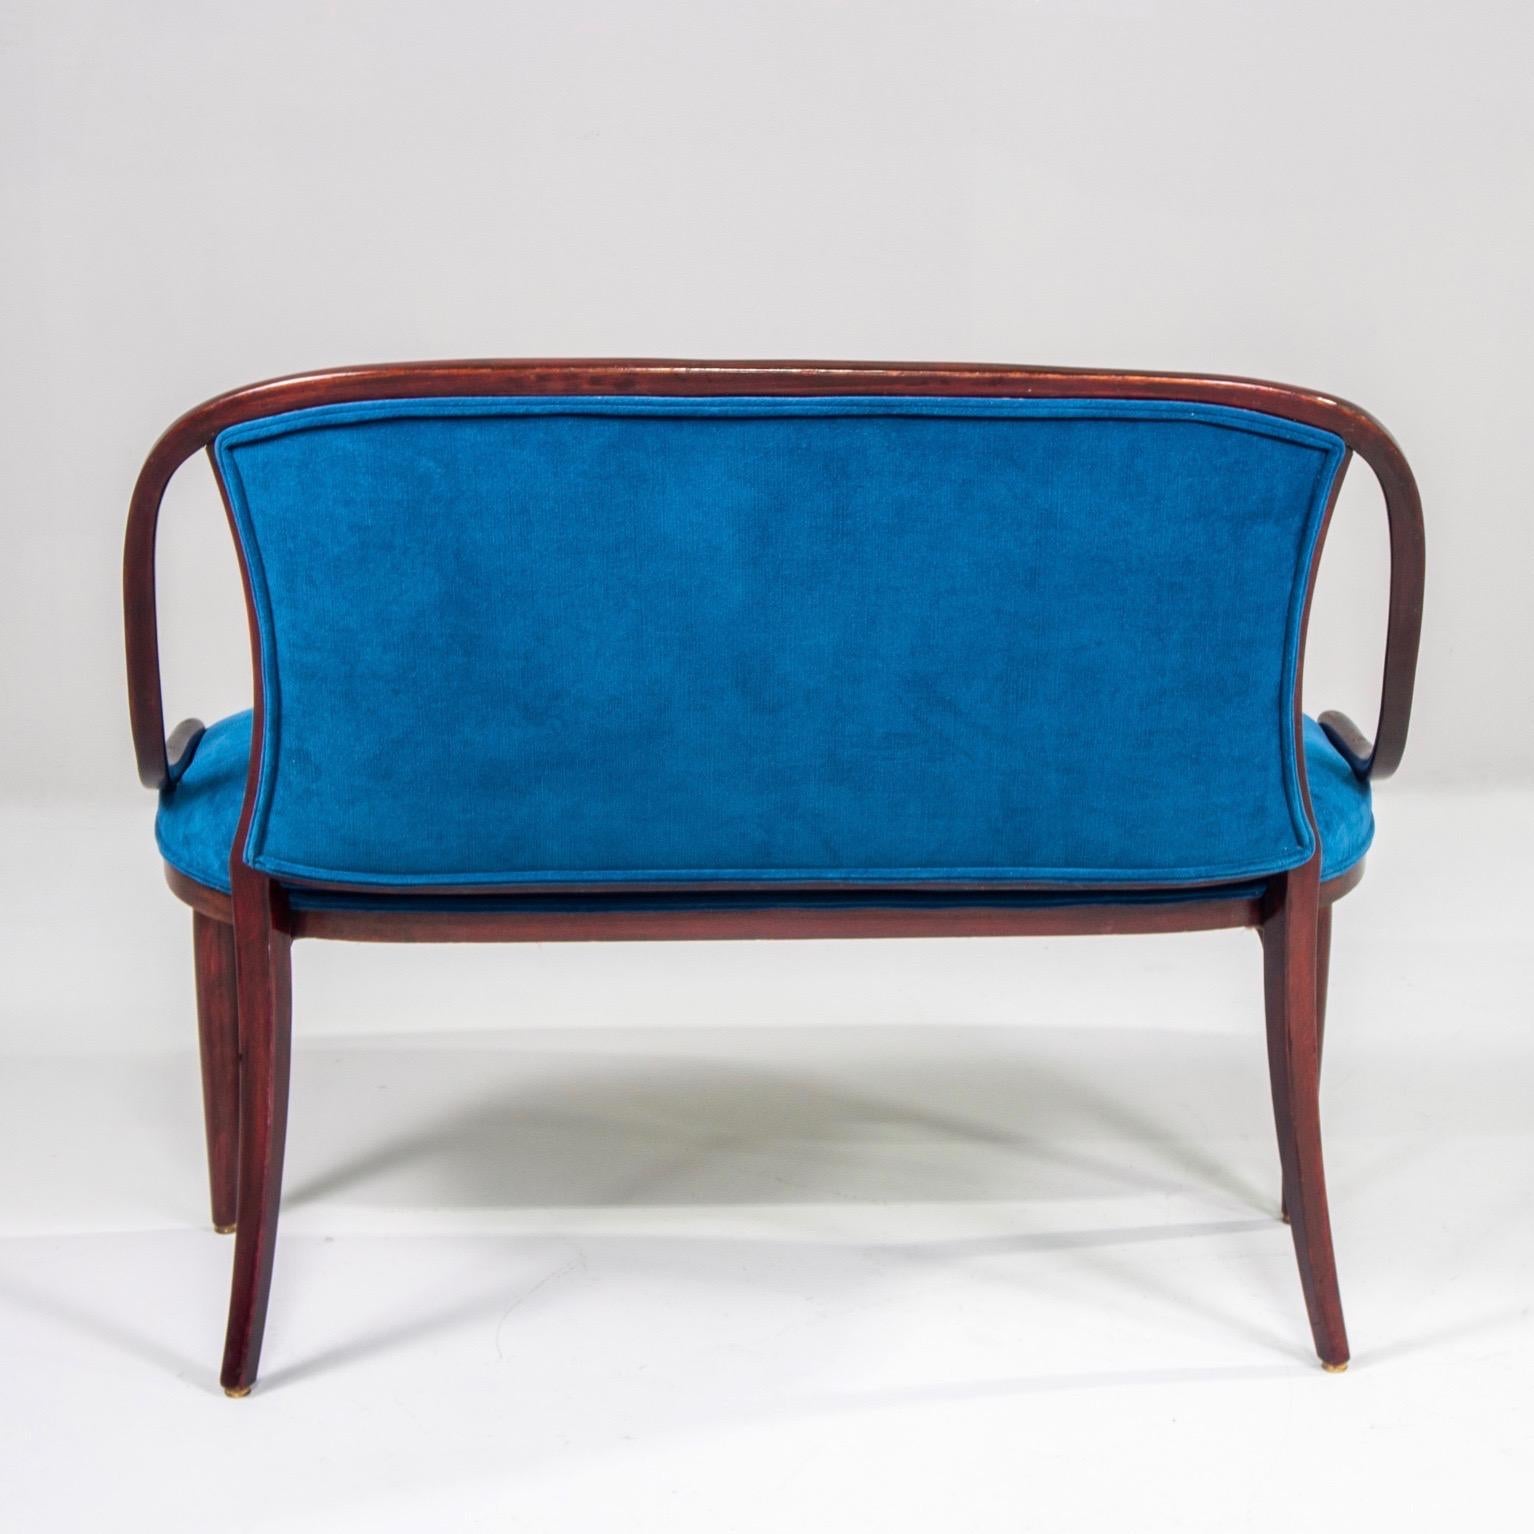 Thonet Settee with New Teal Blue Velvet Upholstery 4